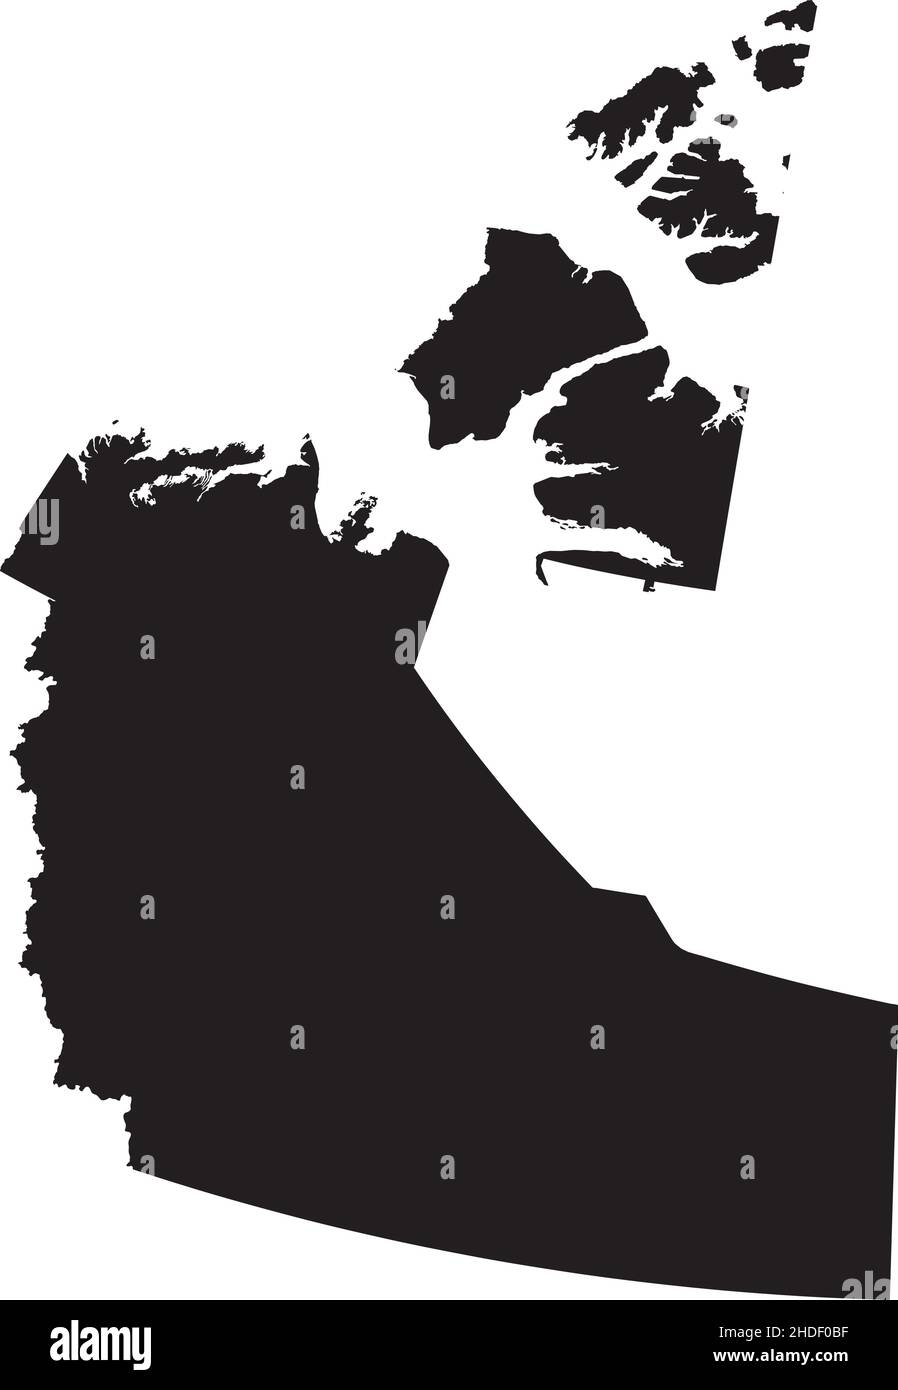 Schwarze flache leere Vektor-Verwaltungskarte des kanadischen Territoriums der NORDWESTLICHEN TERRITORIEN, KANADA Stock Vektor